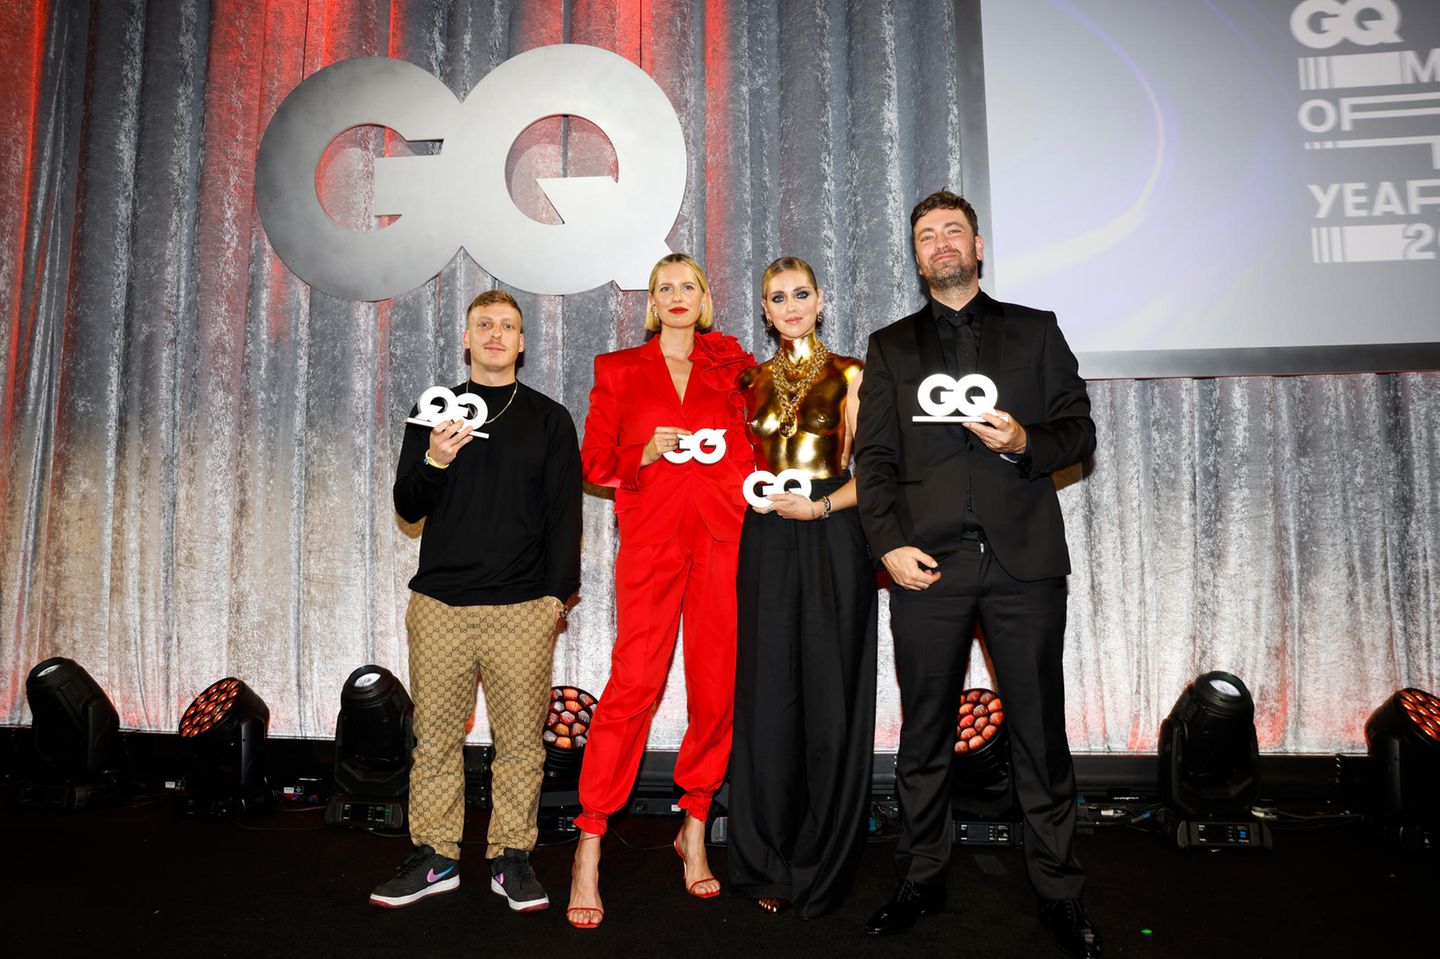 So sehen lässig-stylische Gewinner aus: Felix Lobrecht, Karolina Kurkova, Chiara Ferragni und Marteria freuen sich über ihre GQ-Awards.